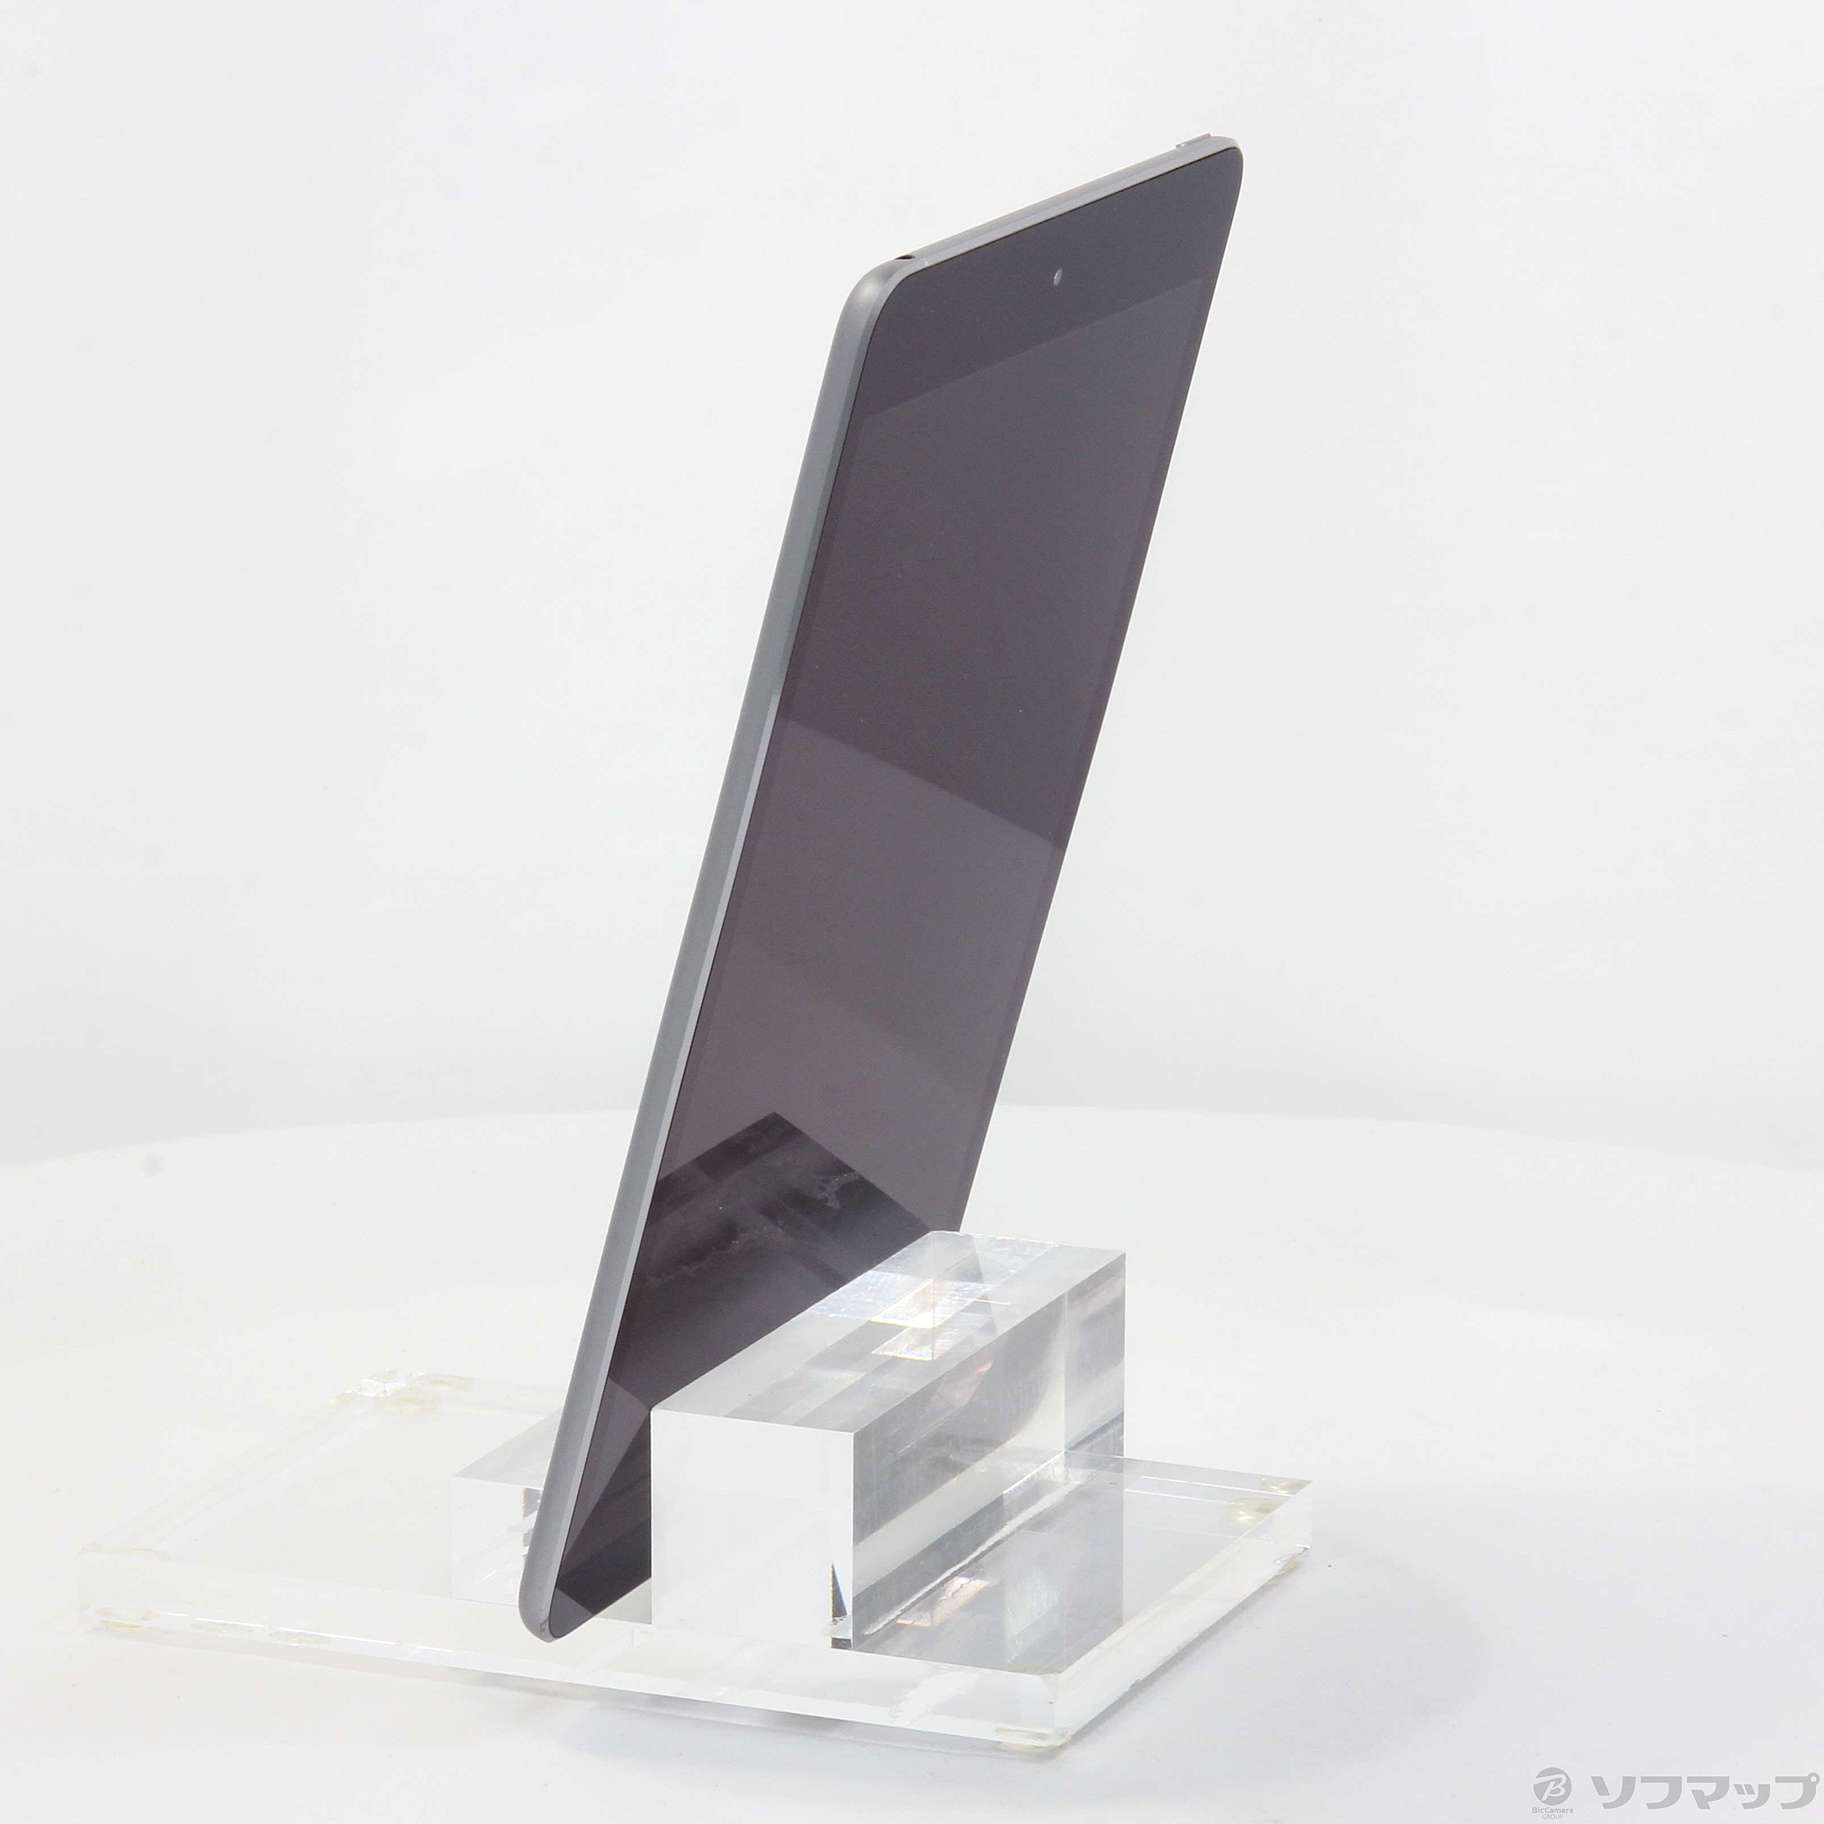 大幅値下げ】比較的美品☆iPad Air2 第2世代 16GB WIFIモデル - www.wp.snigre.com